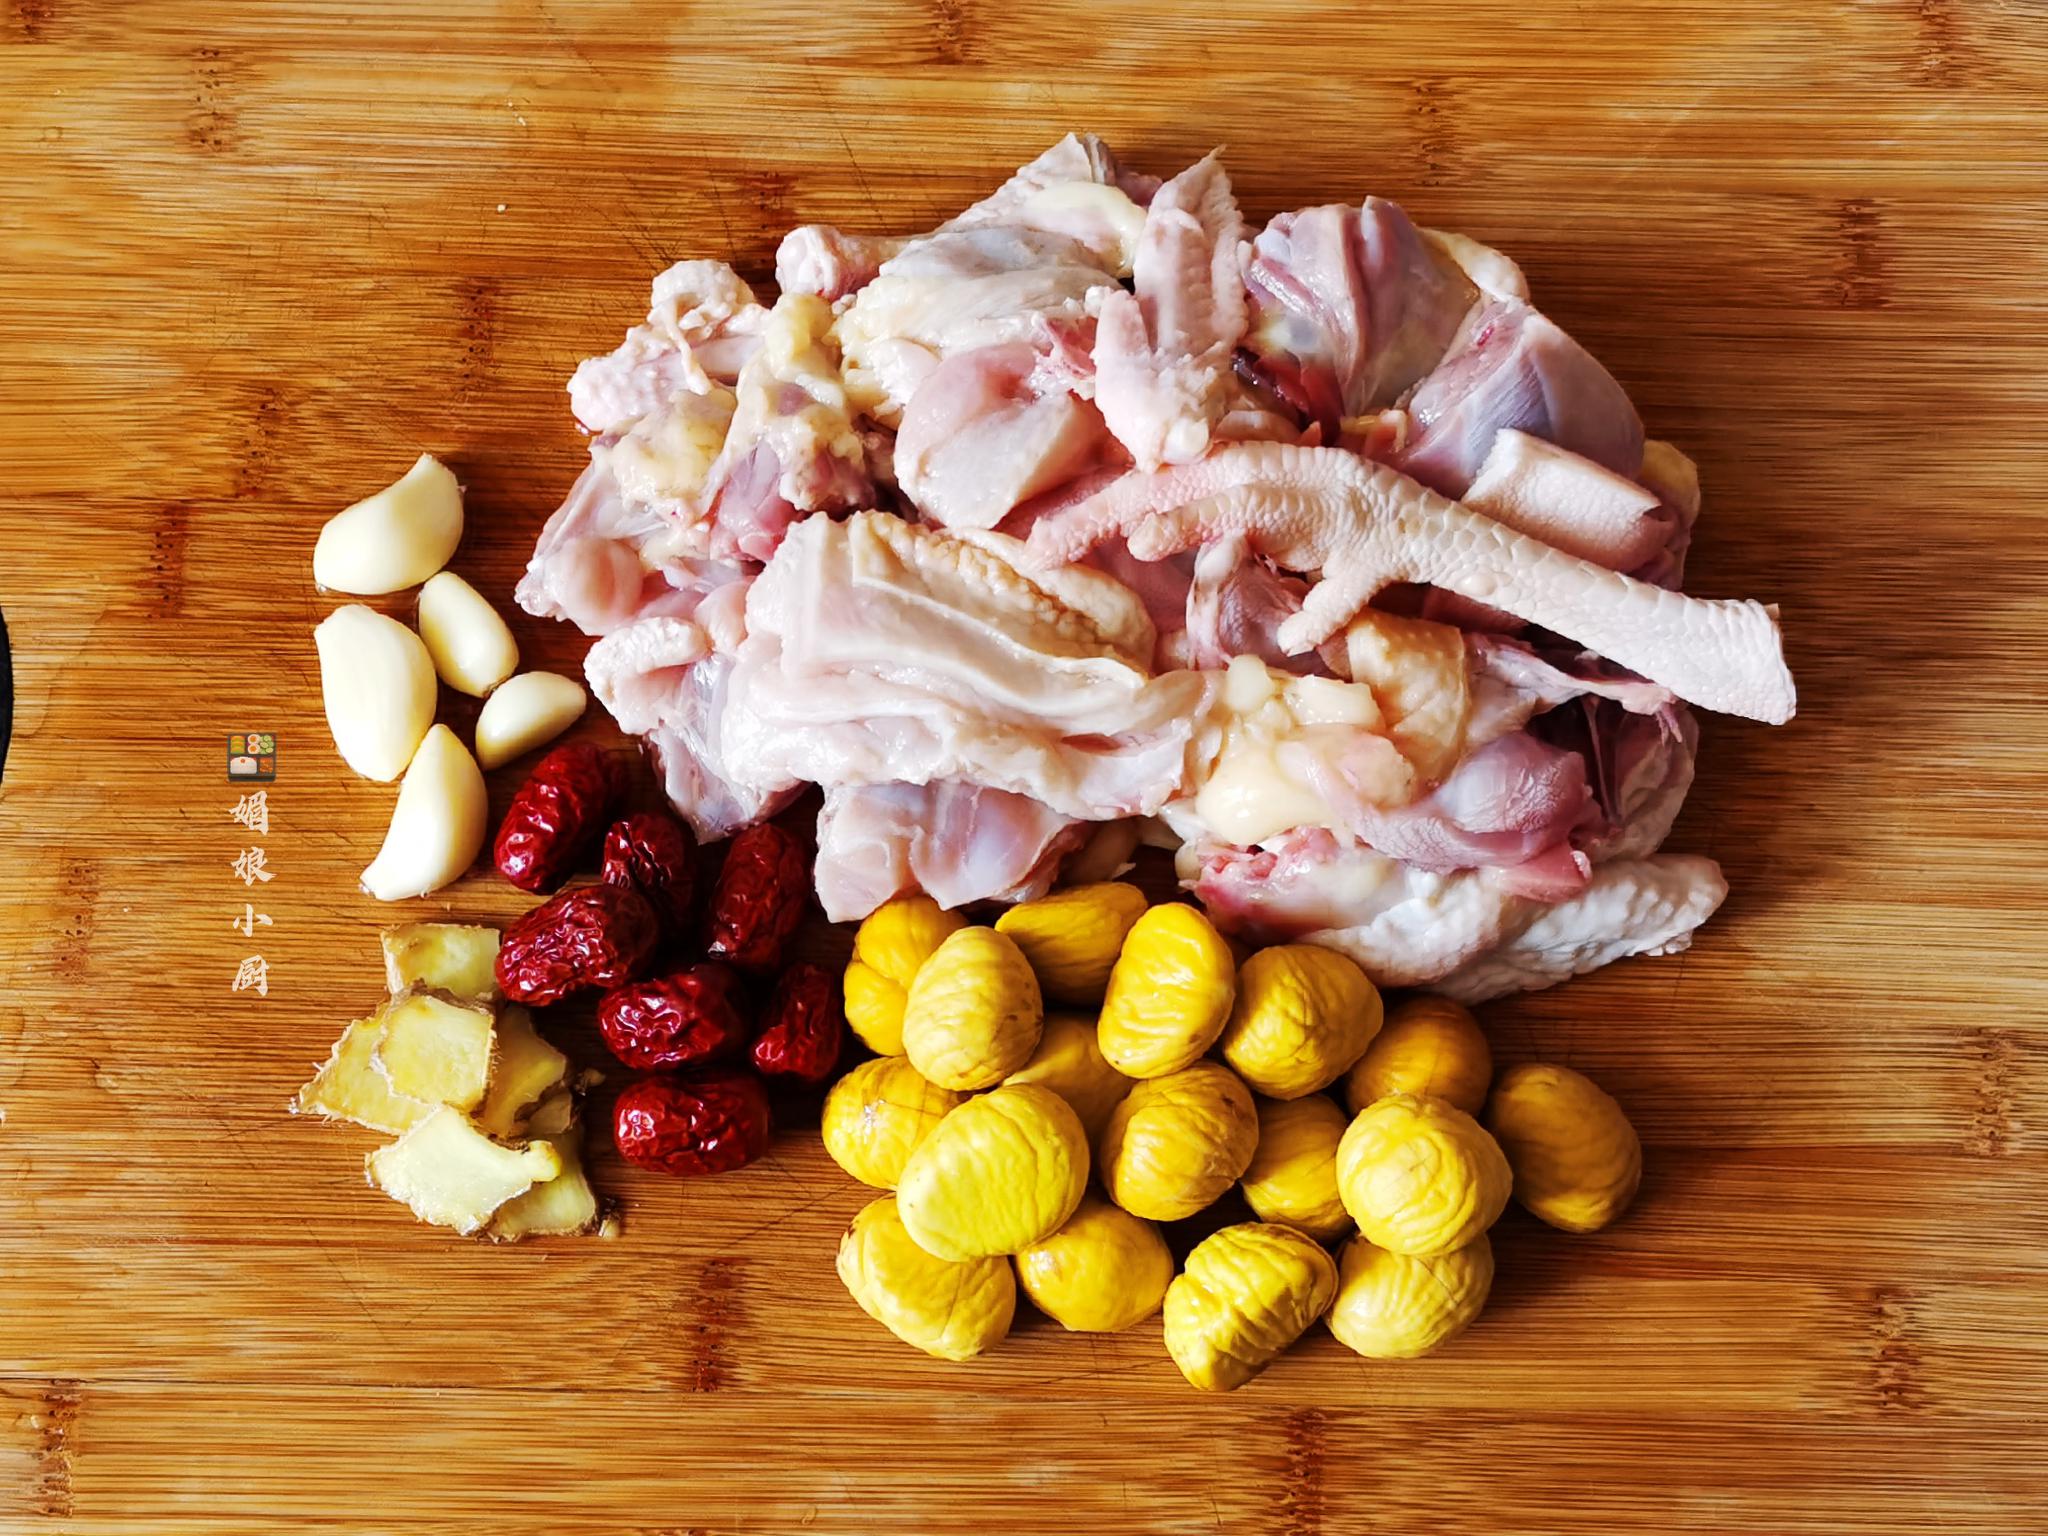 【板栗炖鸡做法】 1,土鸡清理干净剁小块,温水清洗,沥干水,锅烧热加1